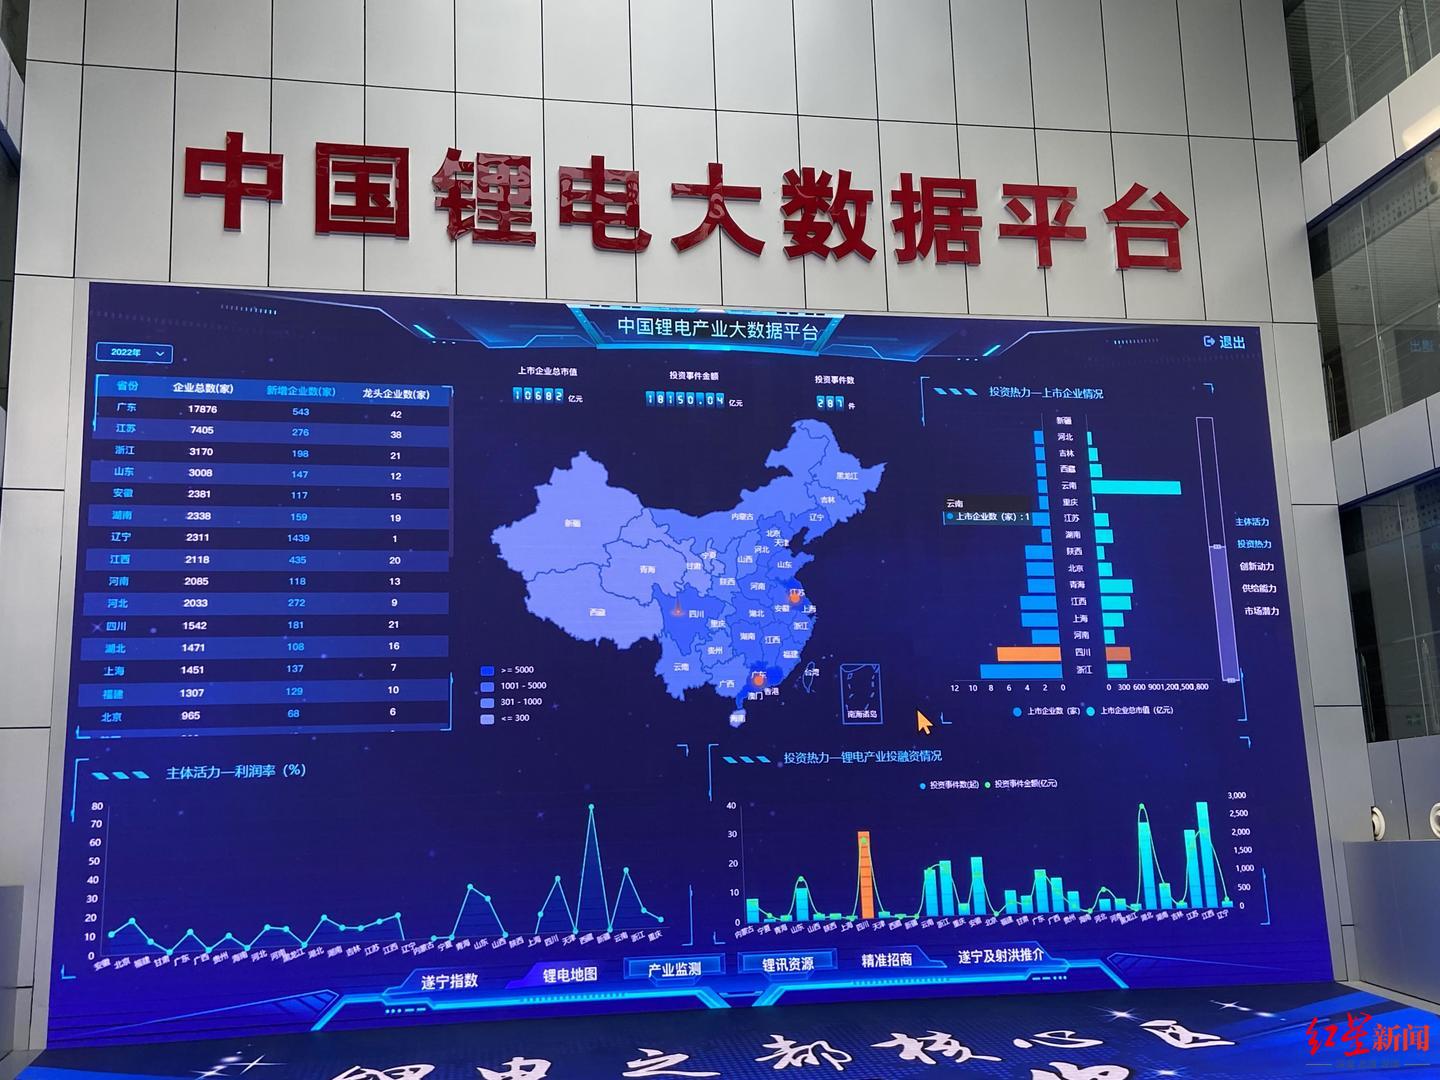 天齐锂业与赛迪研究院合作共建“中国锂电大数据平台”